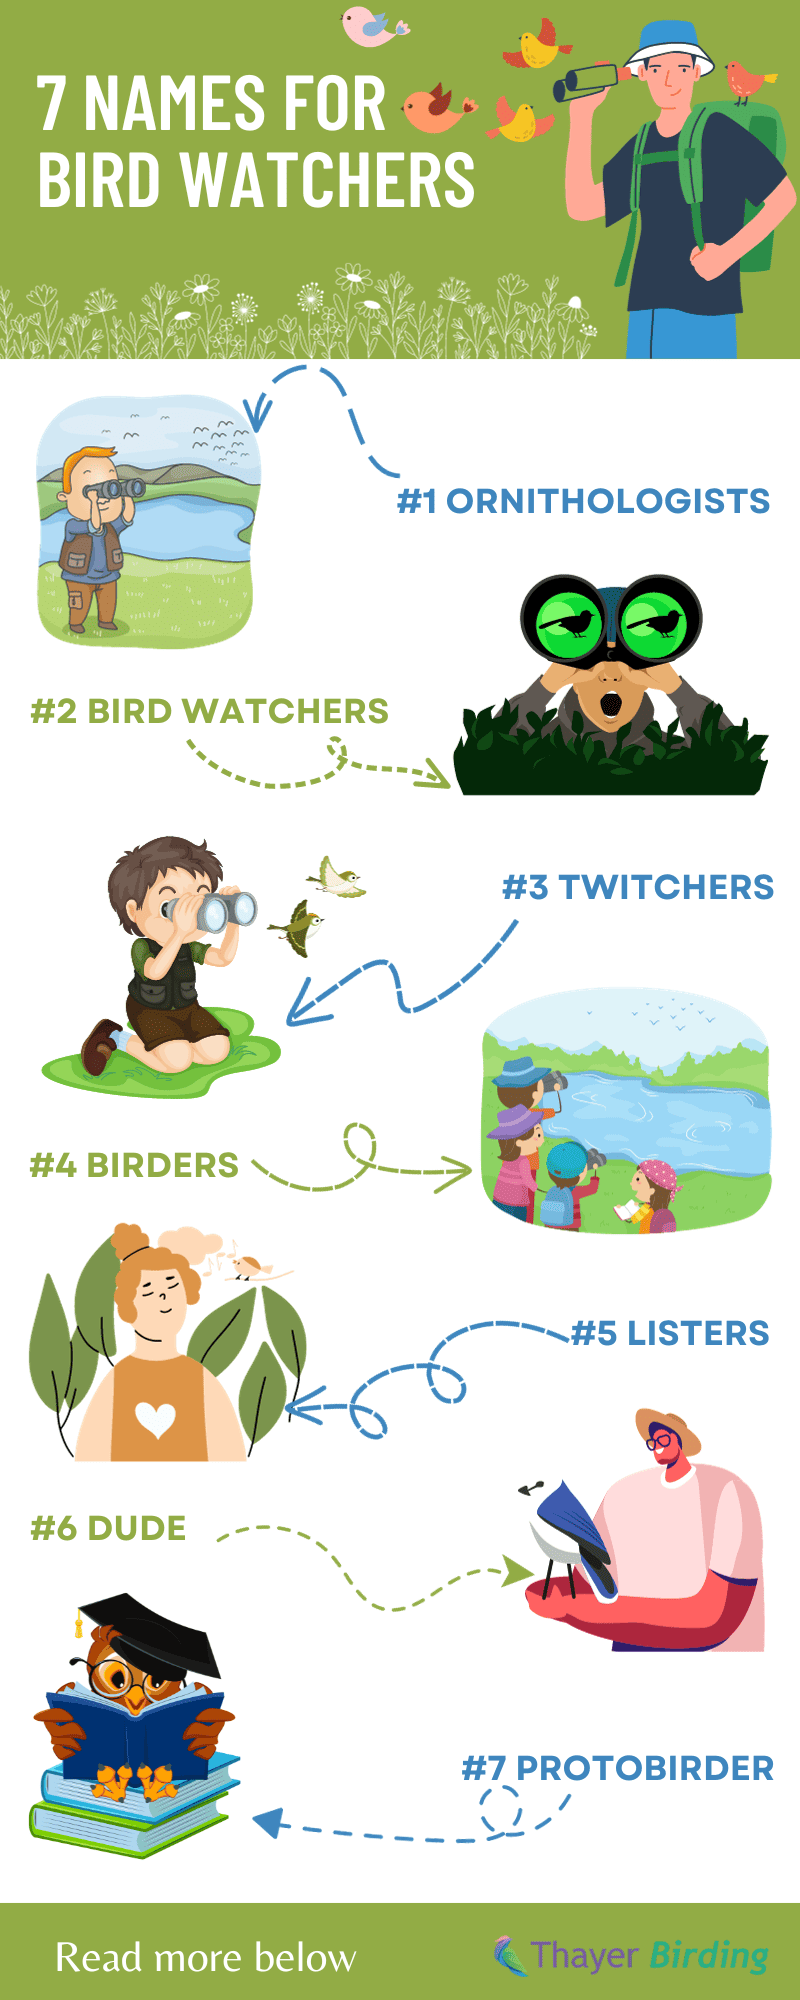 7-Names-for-Bird-Watchers